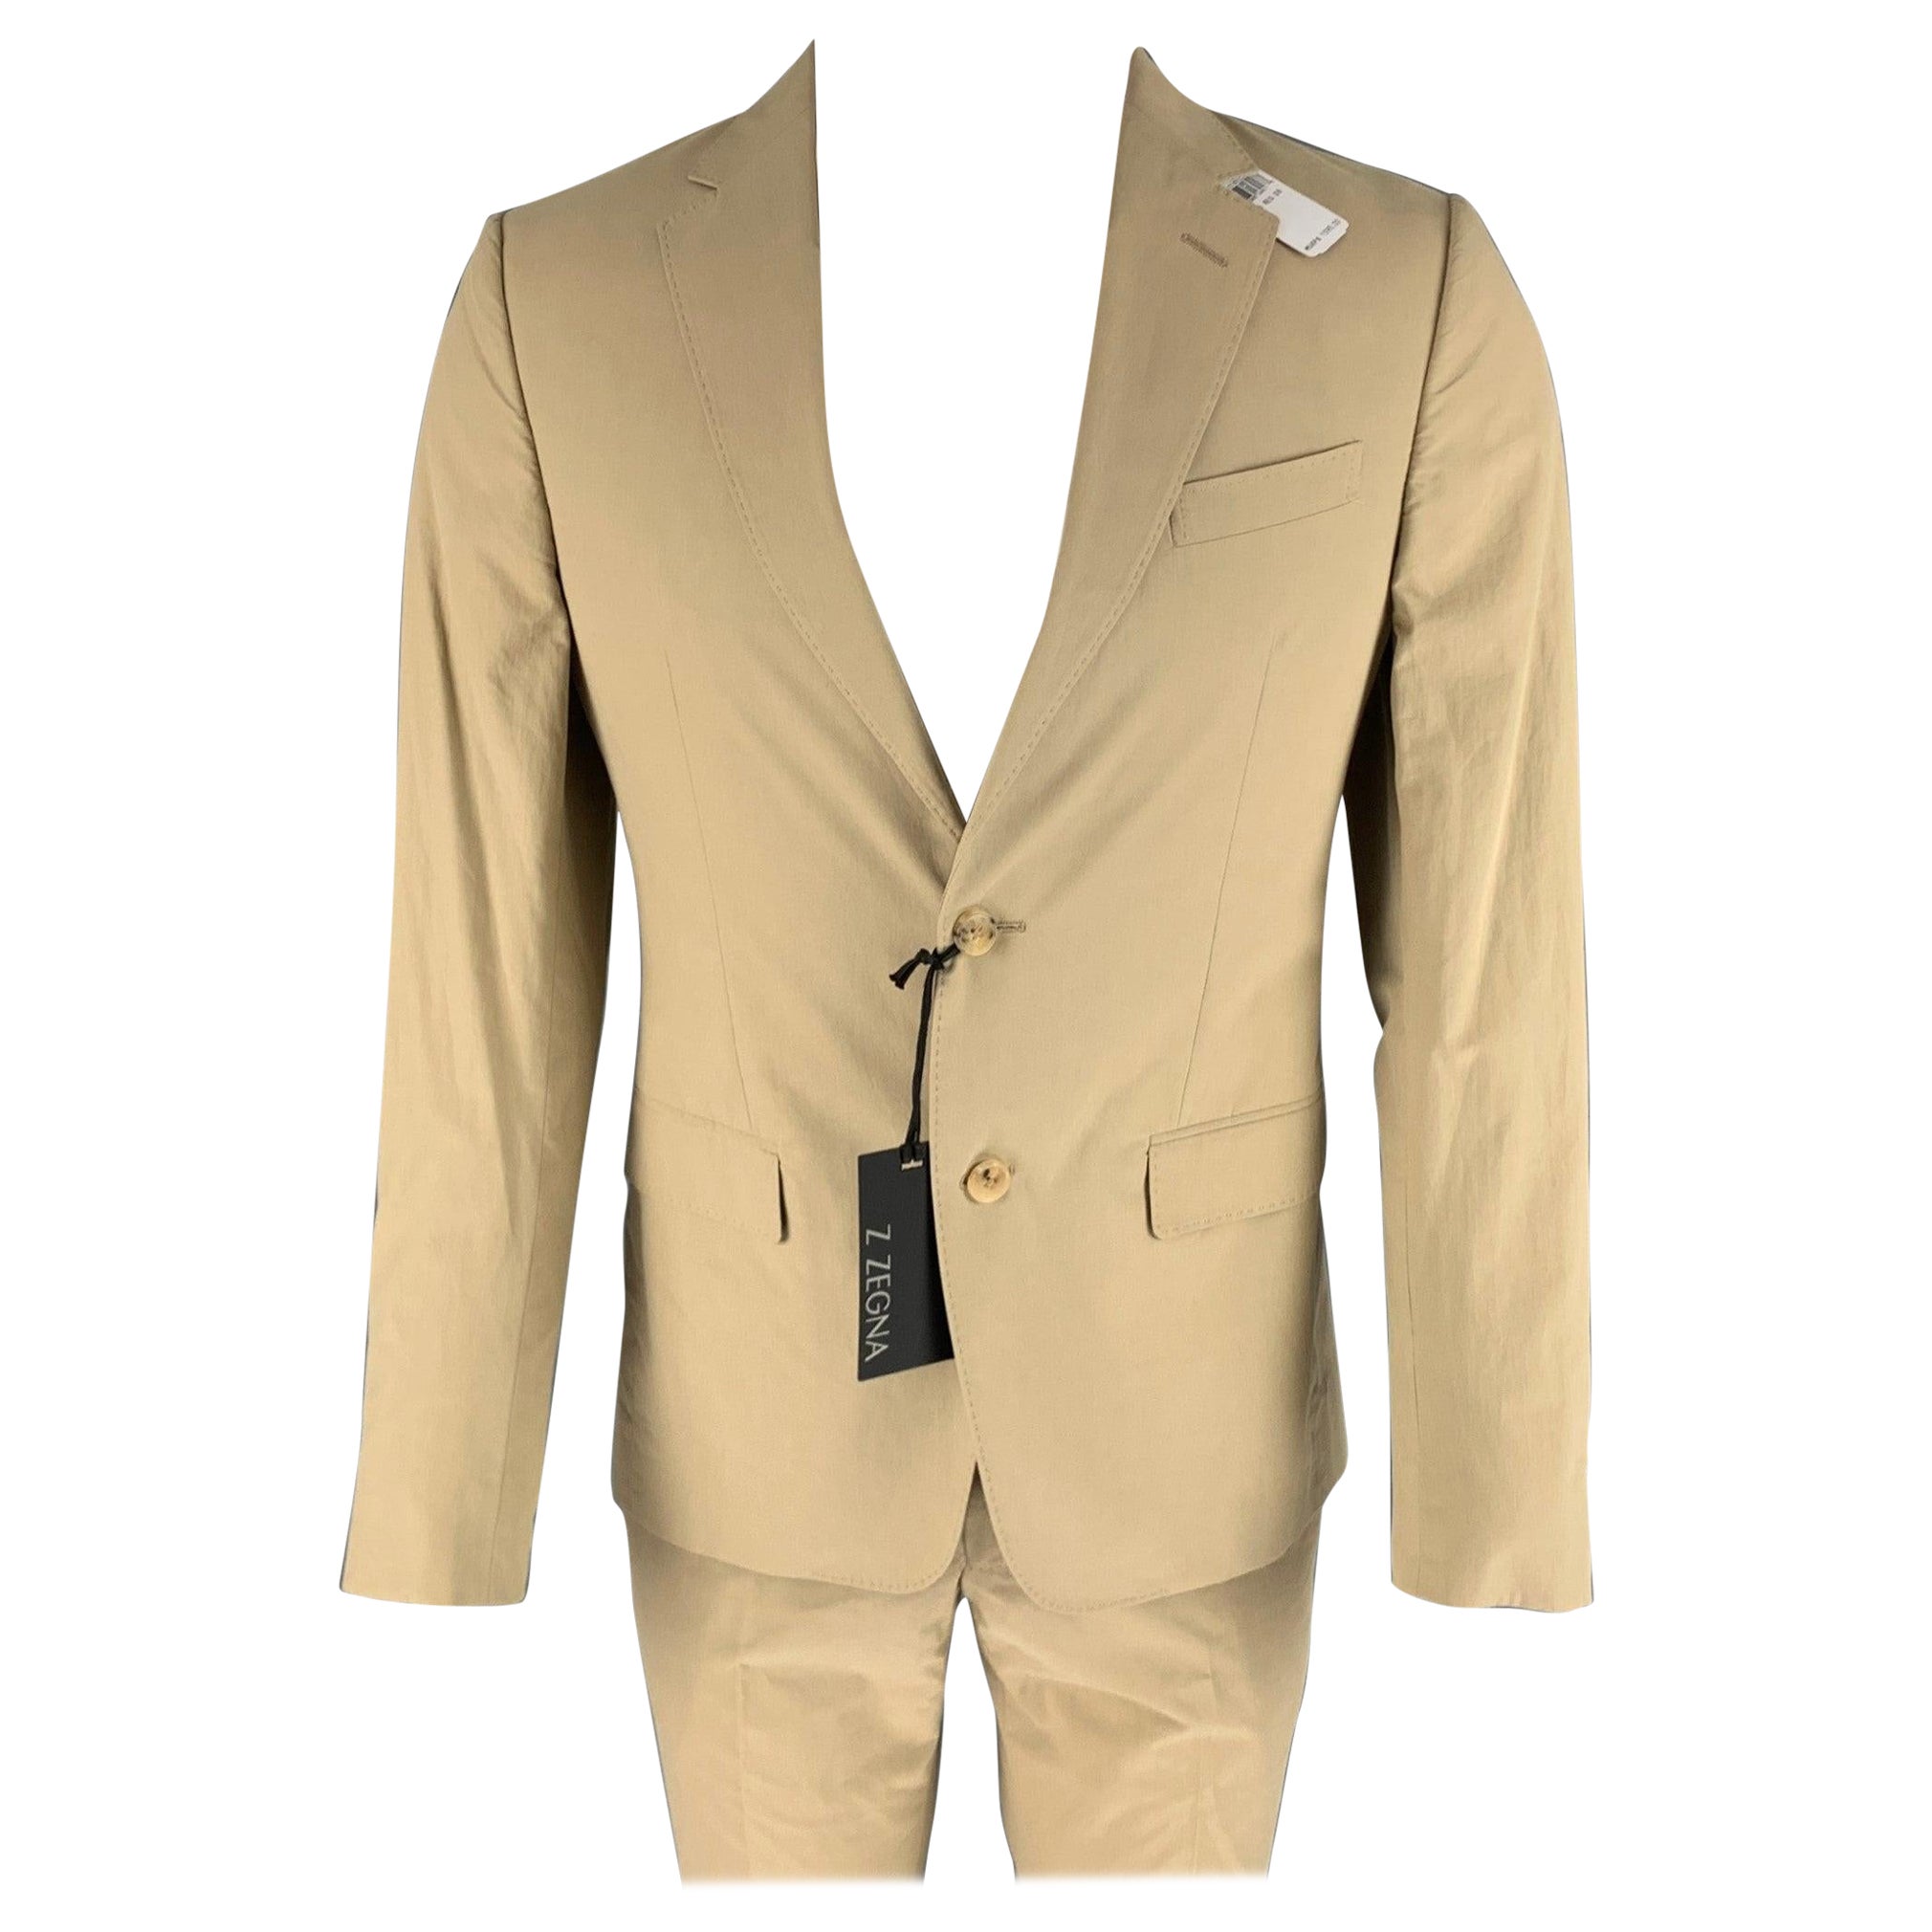 Z ZEGNA Size 36 Khaki Cotton Notch Lapel Suit For Sale